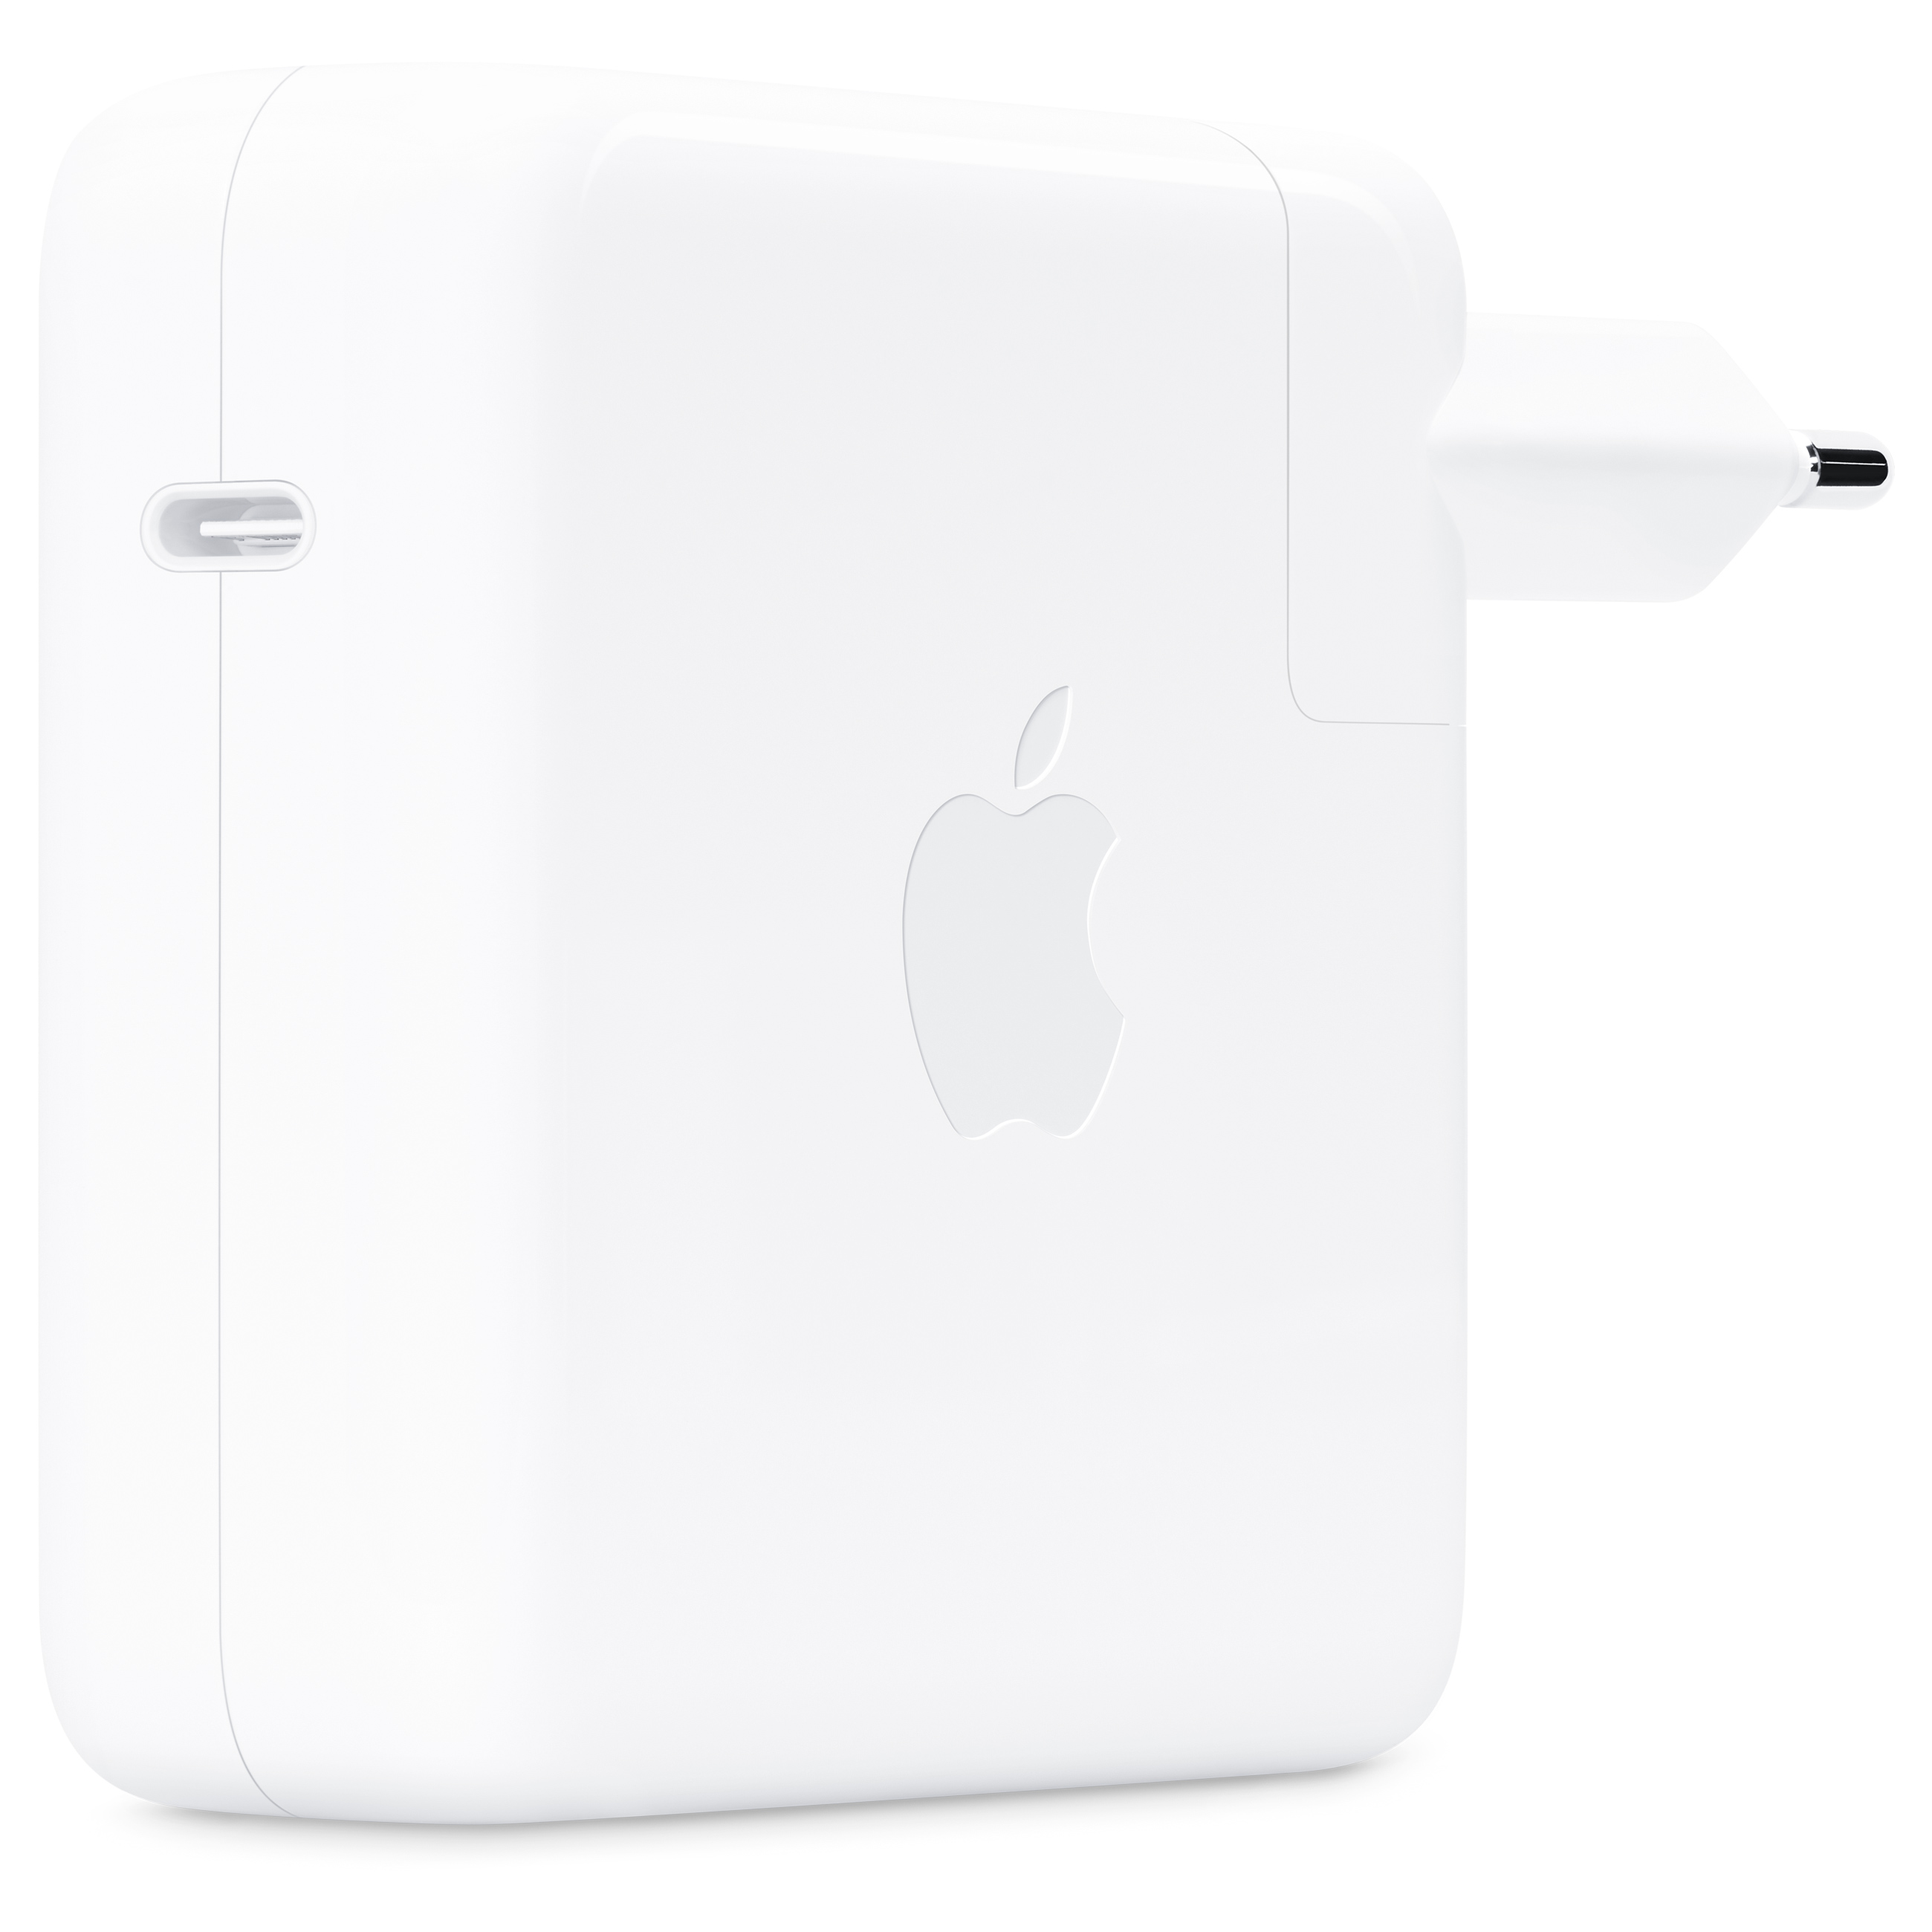 Apple USB-C Power Adapter - Ladegerät für 16" MacBook Pro - Weiß - Gebraucht